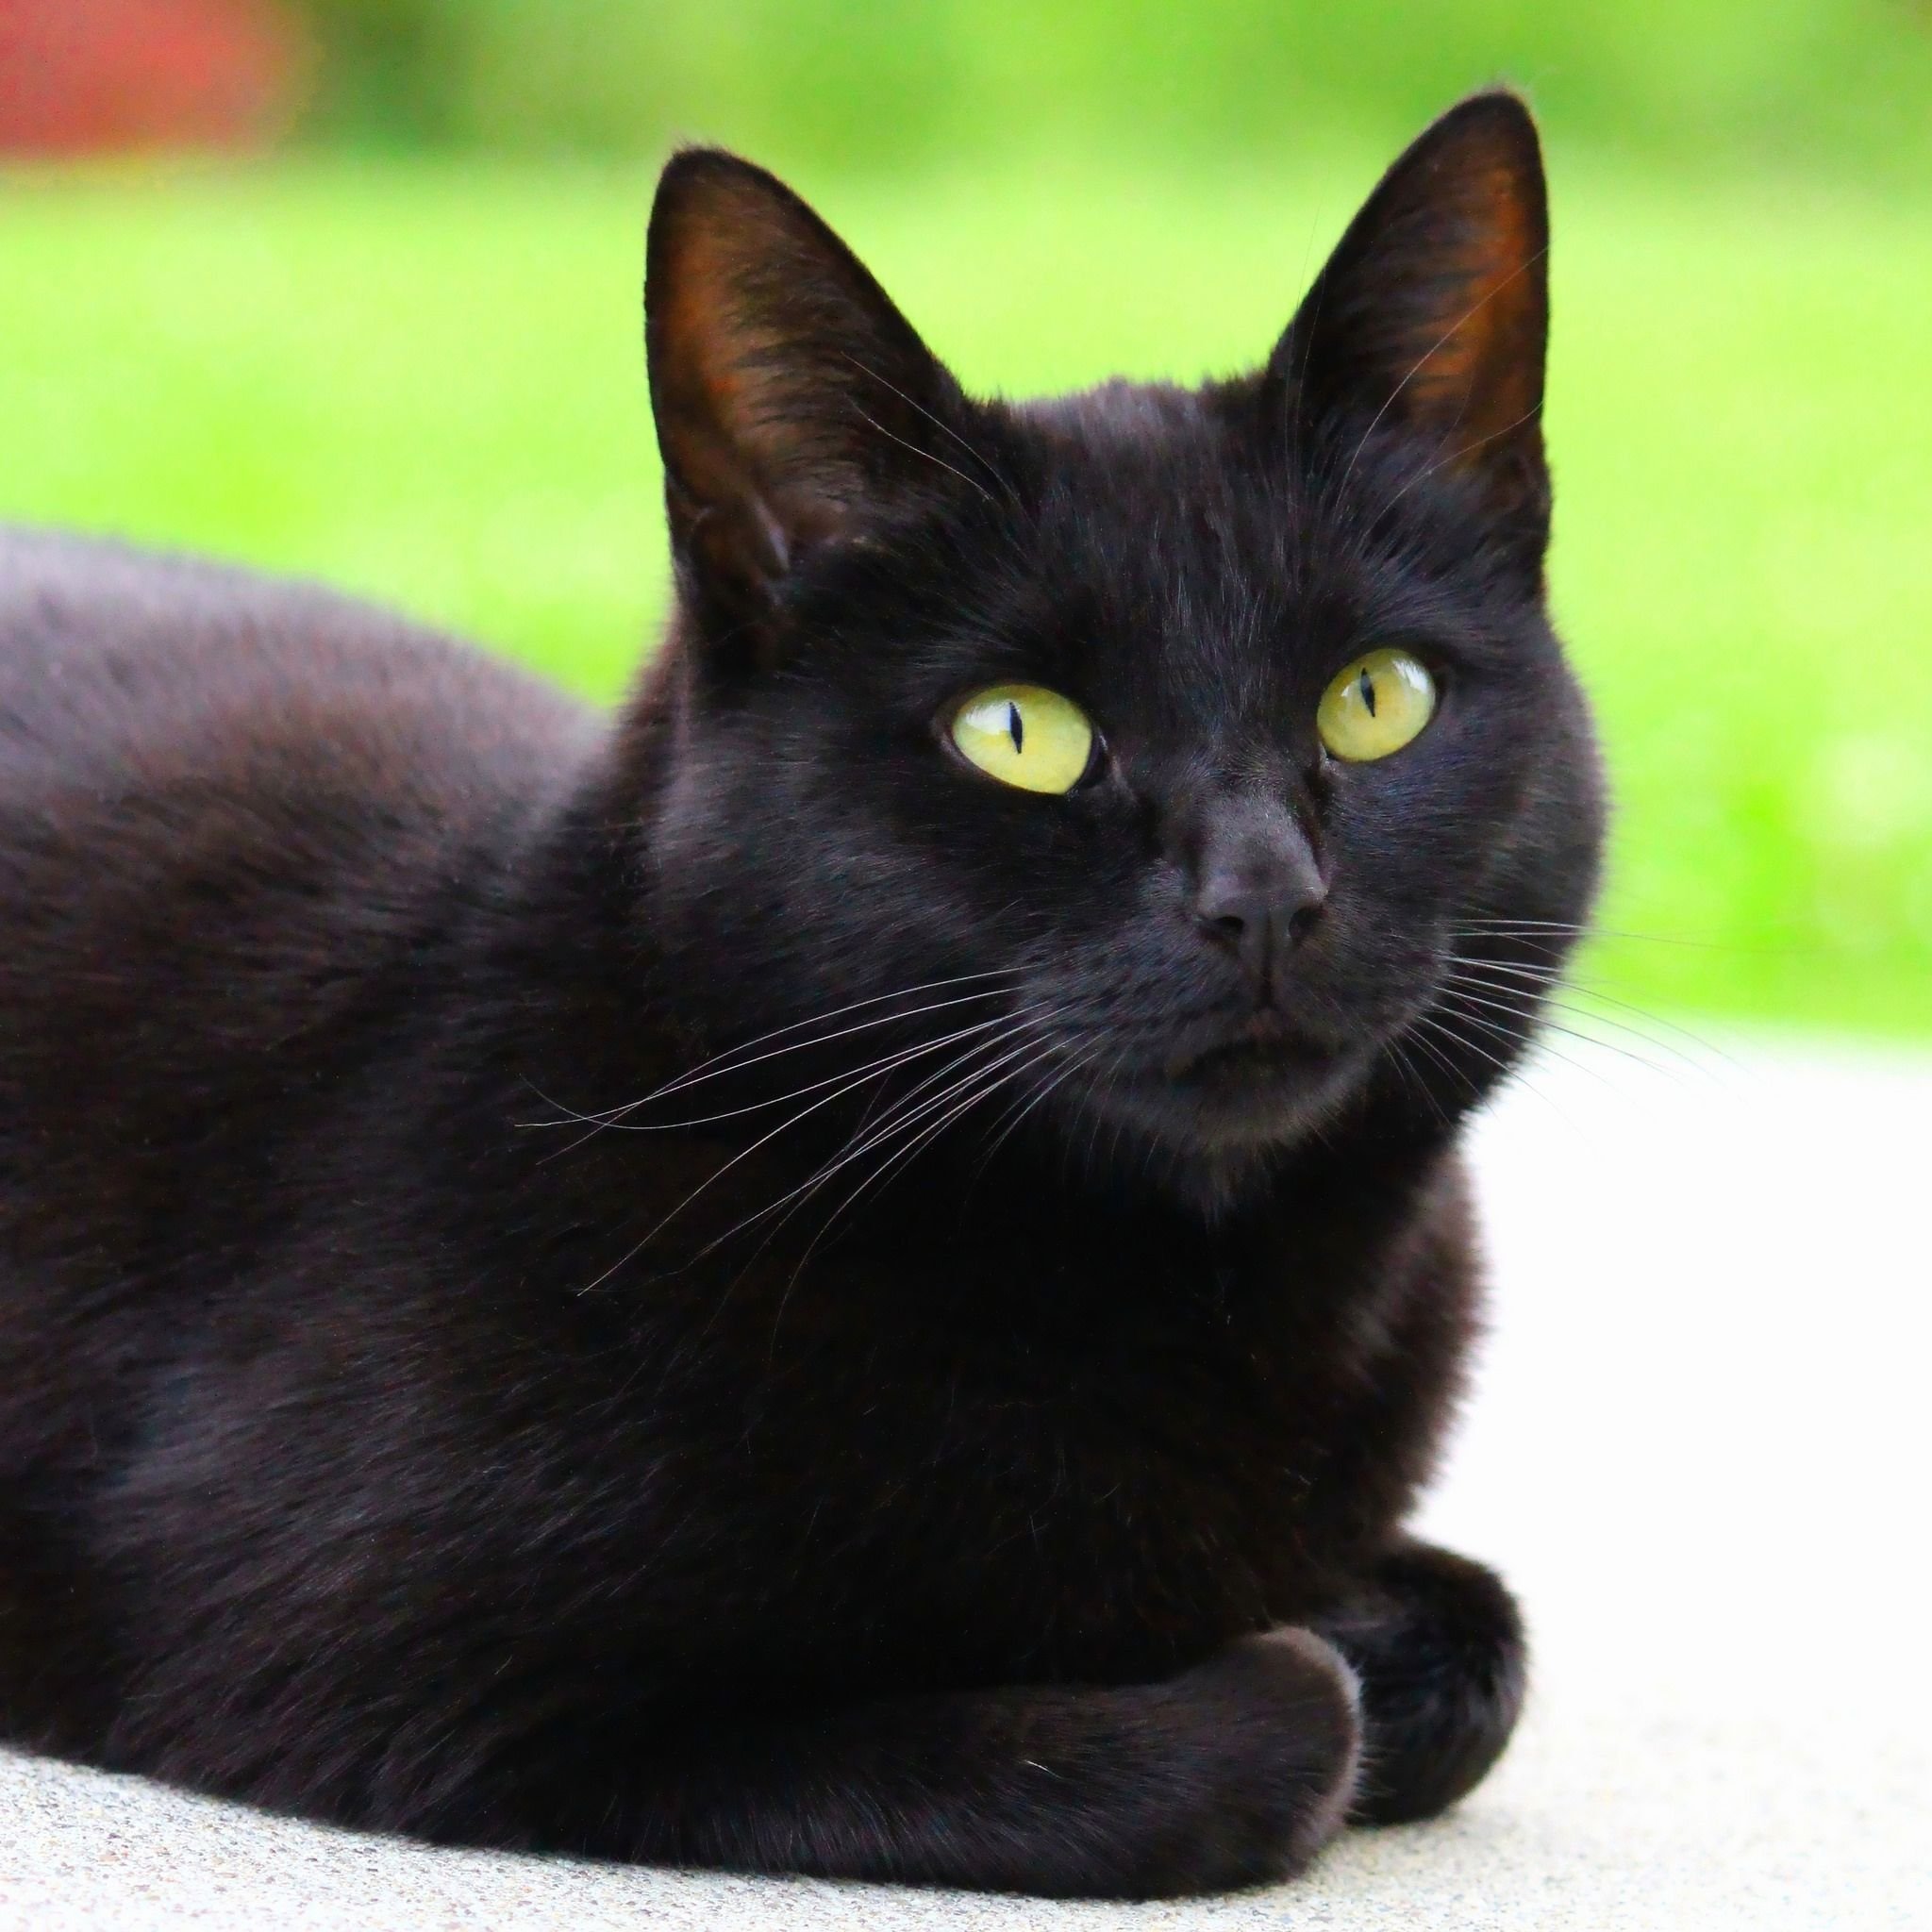 Порода черной кошки с желтыми глазами. Бомбейская кошка. Бомбейская кошка короткошерстная черная. Богемская кошка чёрная. Сибирская черная короткошерстная кошка.